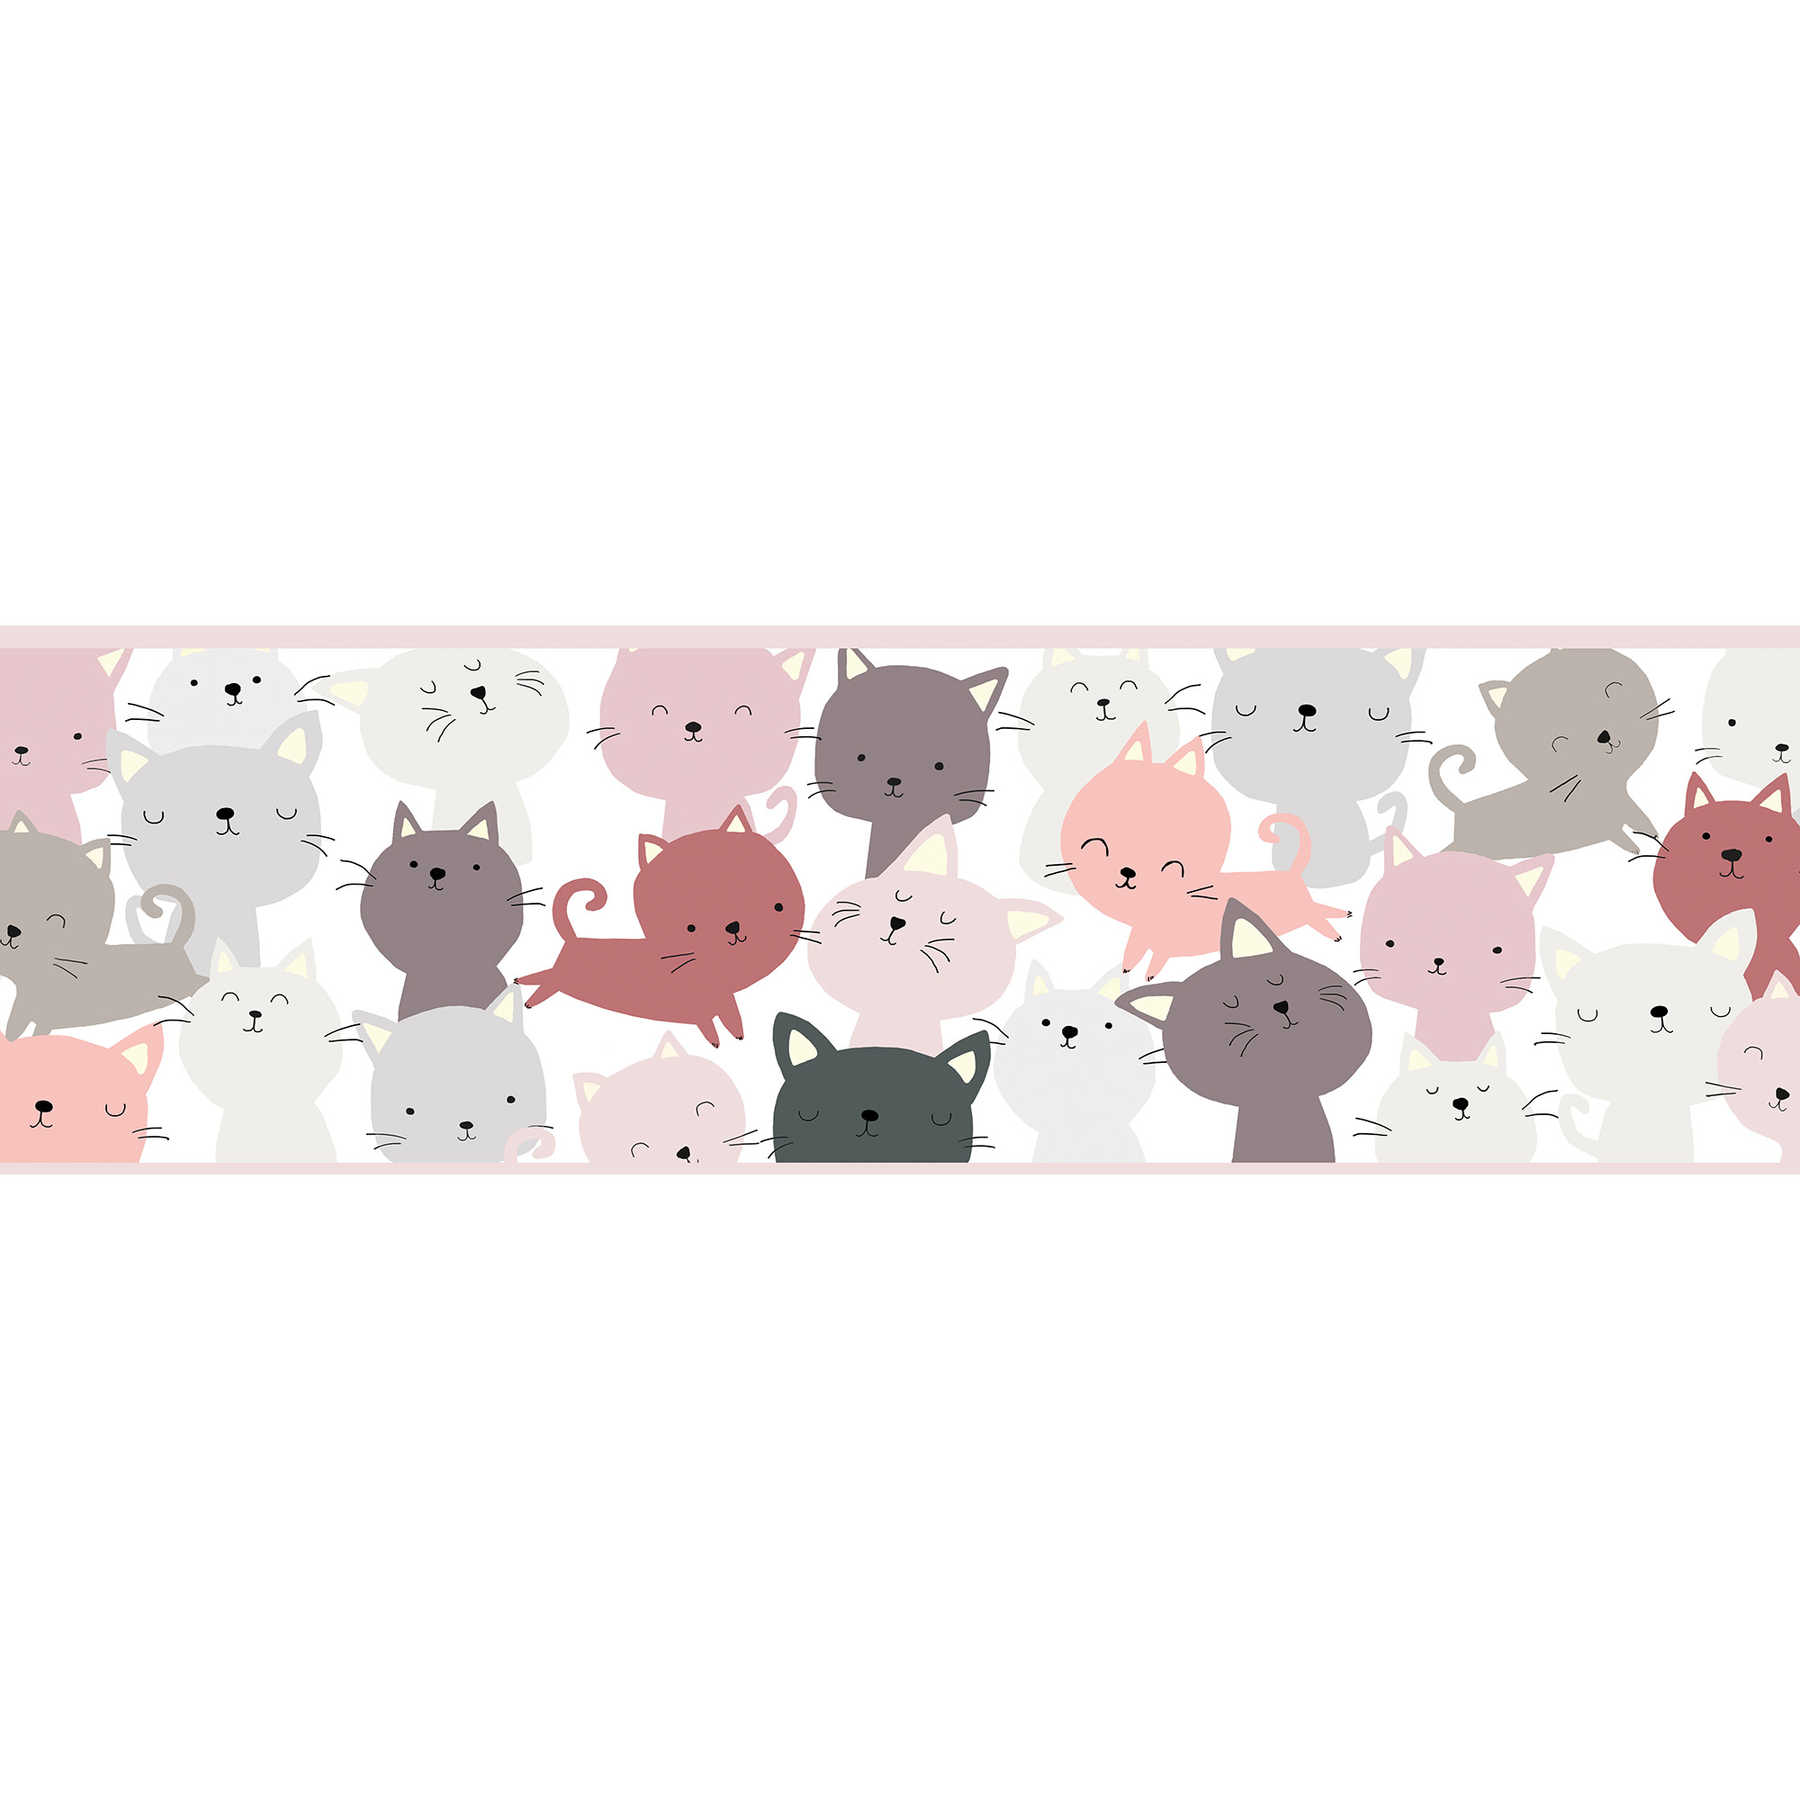 Papier peint fille, bordure autocollante "Amis des chats" - rose, gris, violet
